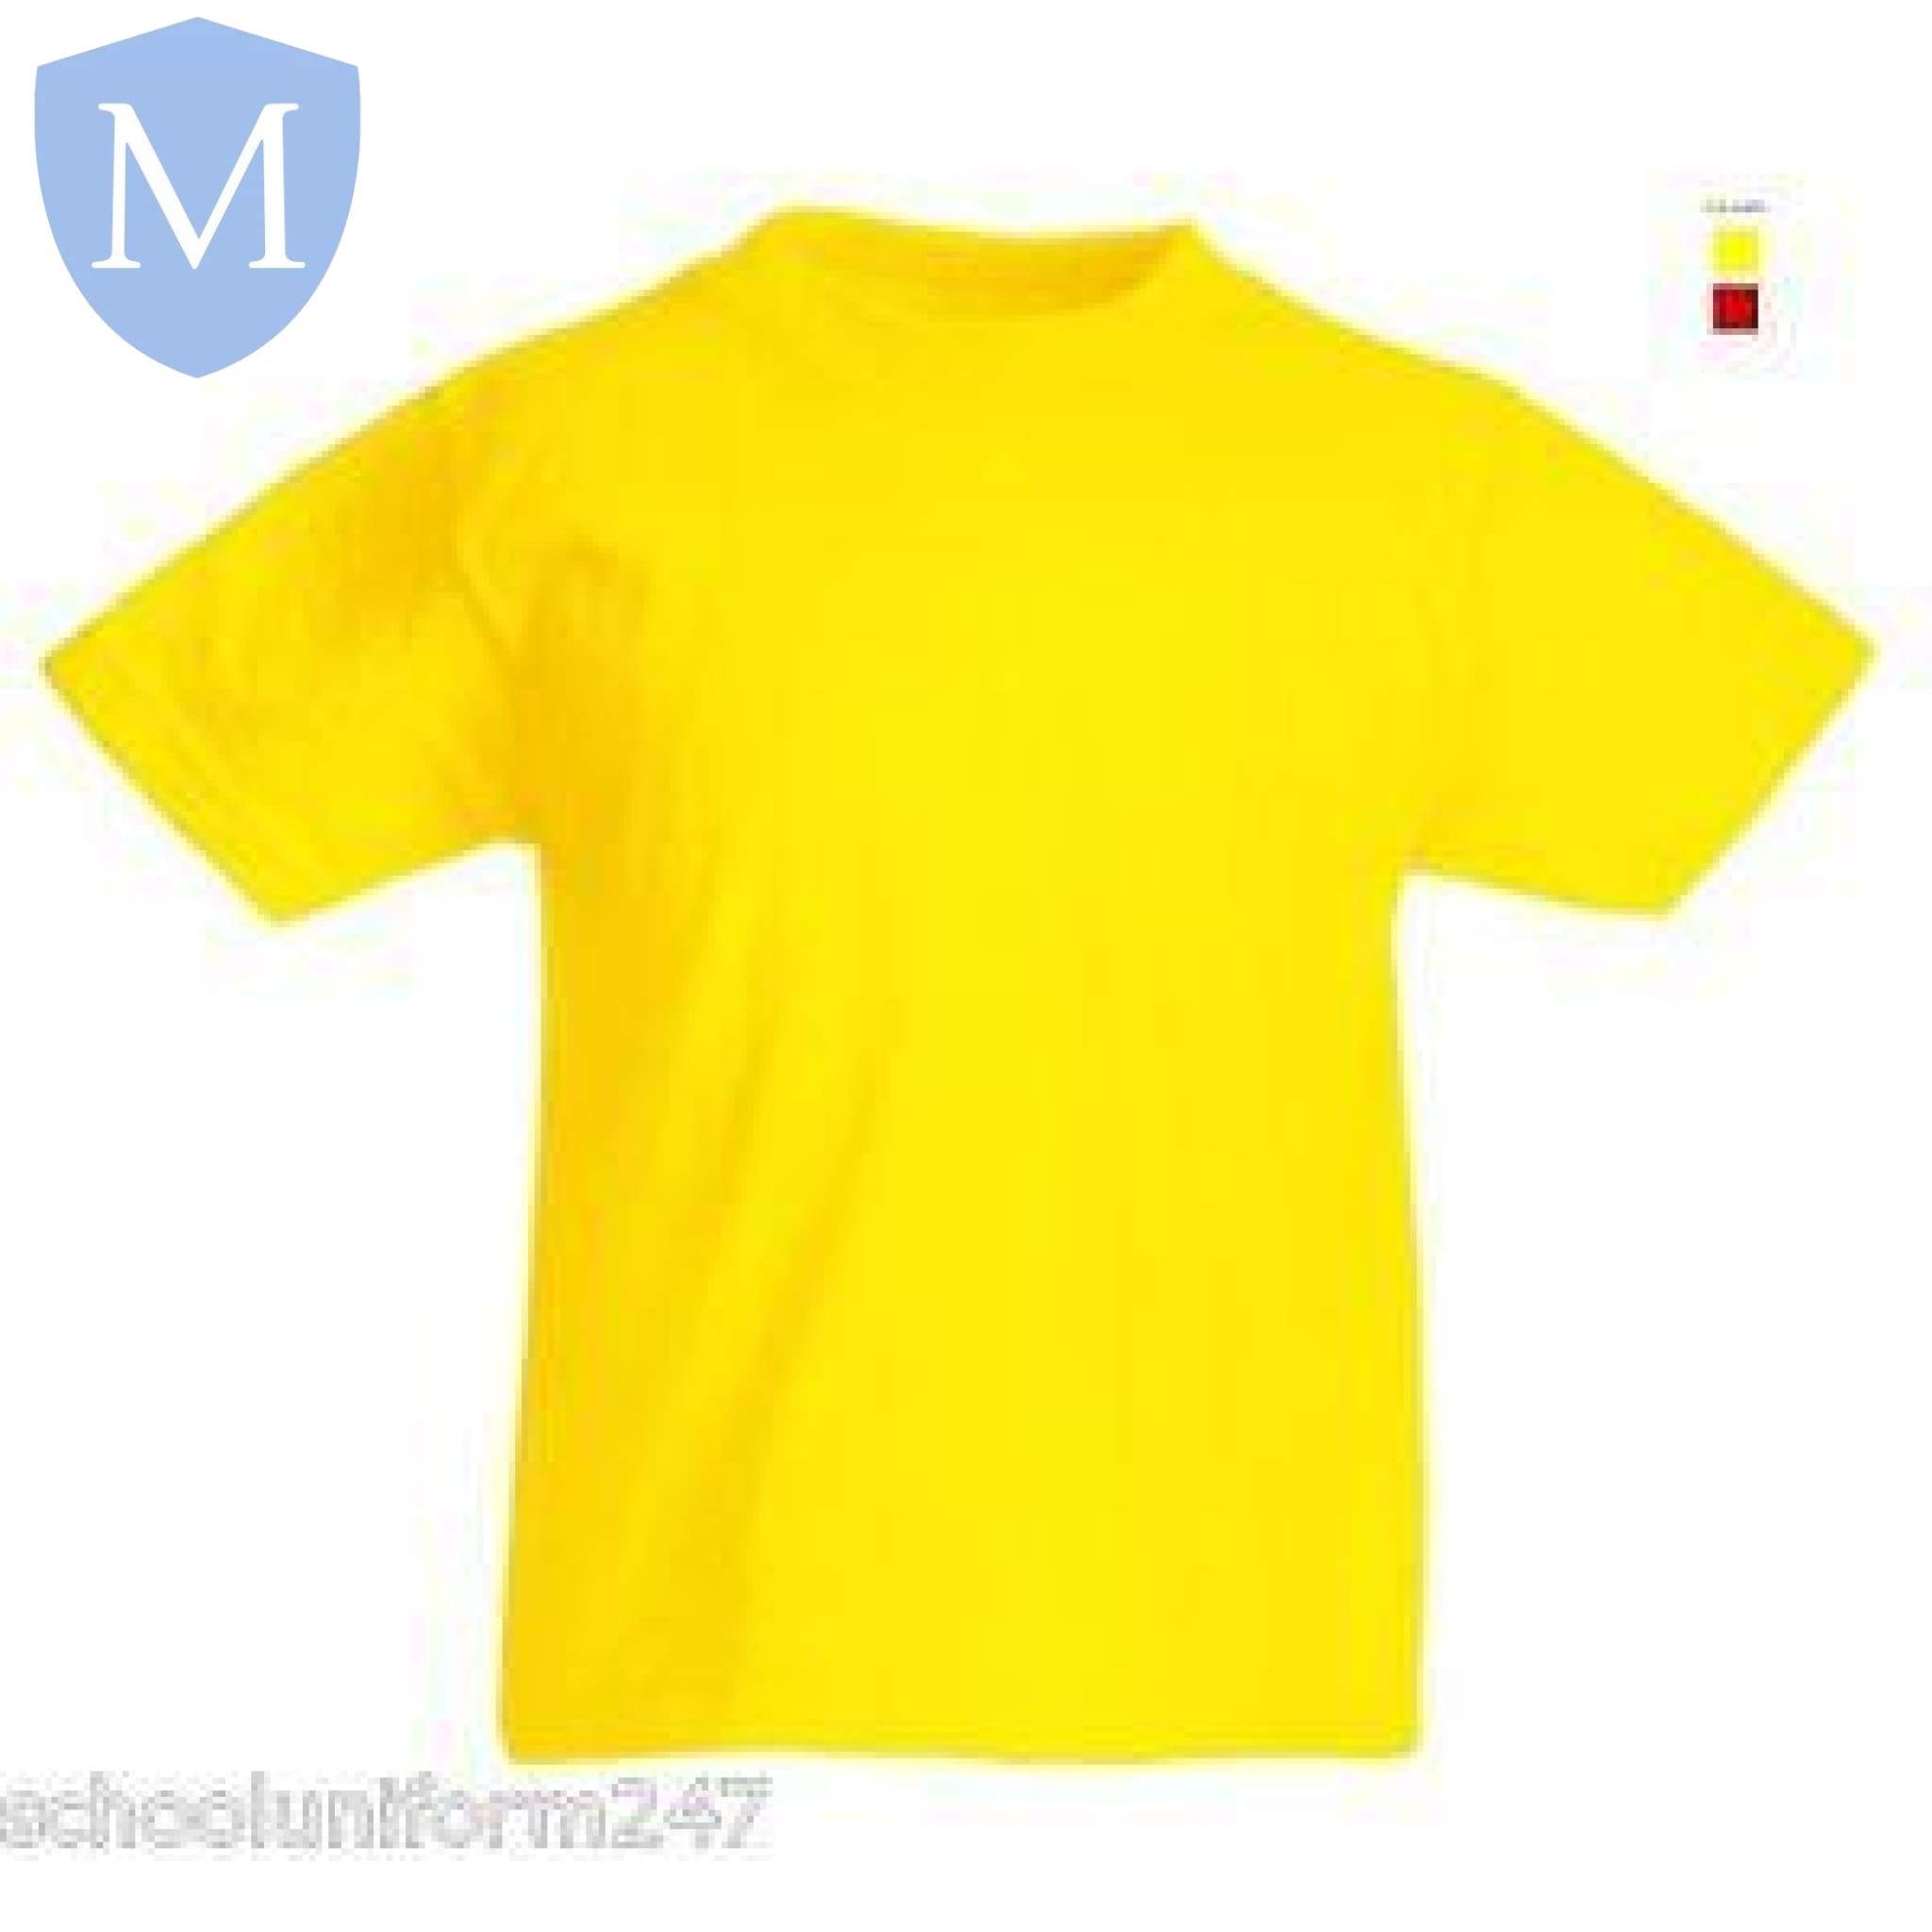 Plain Sports Round Neck T-Shirts - Yellow Size 11-13,Size 2-3,Size 2XL,Size 3-4,Size 3XL,Size 5-6,Size 7-8,Size 9-10,Size Large,Size Medium,Size Small,Size XL